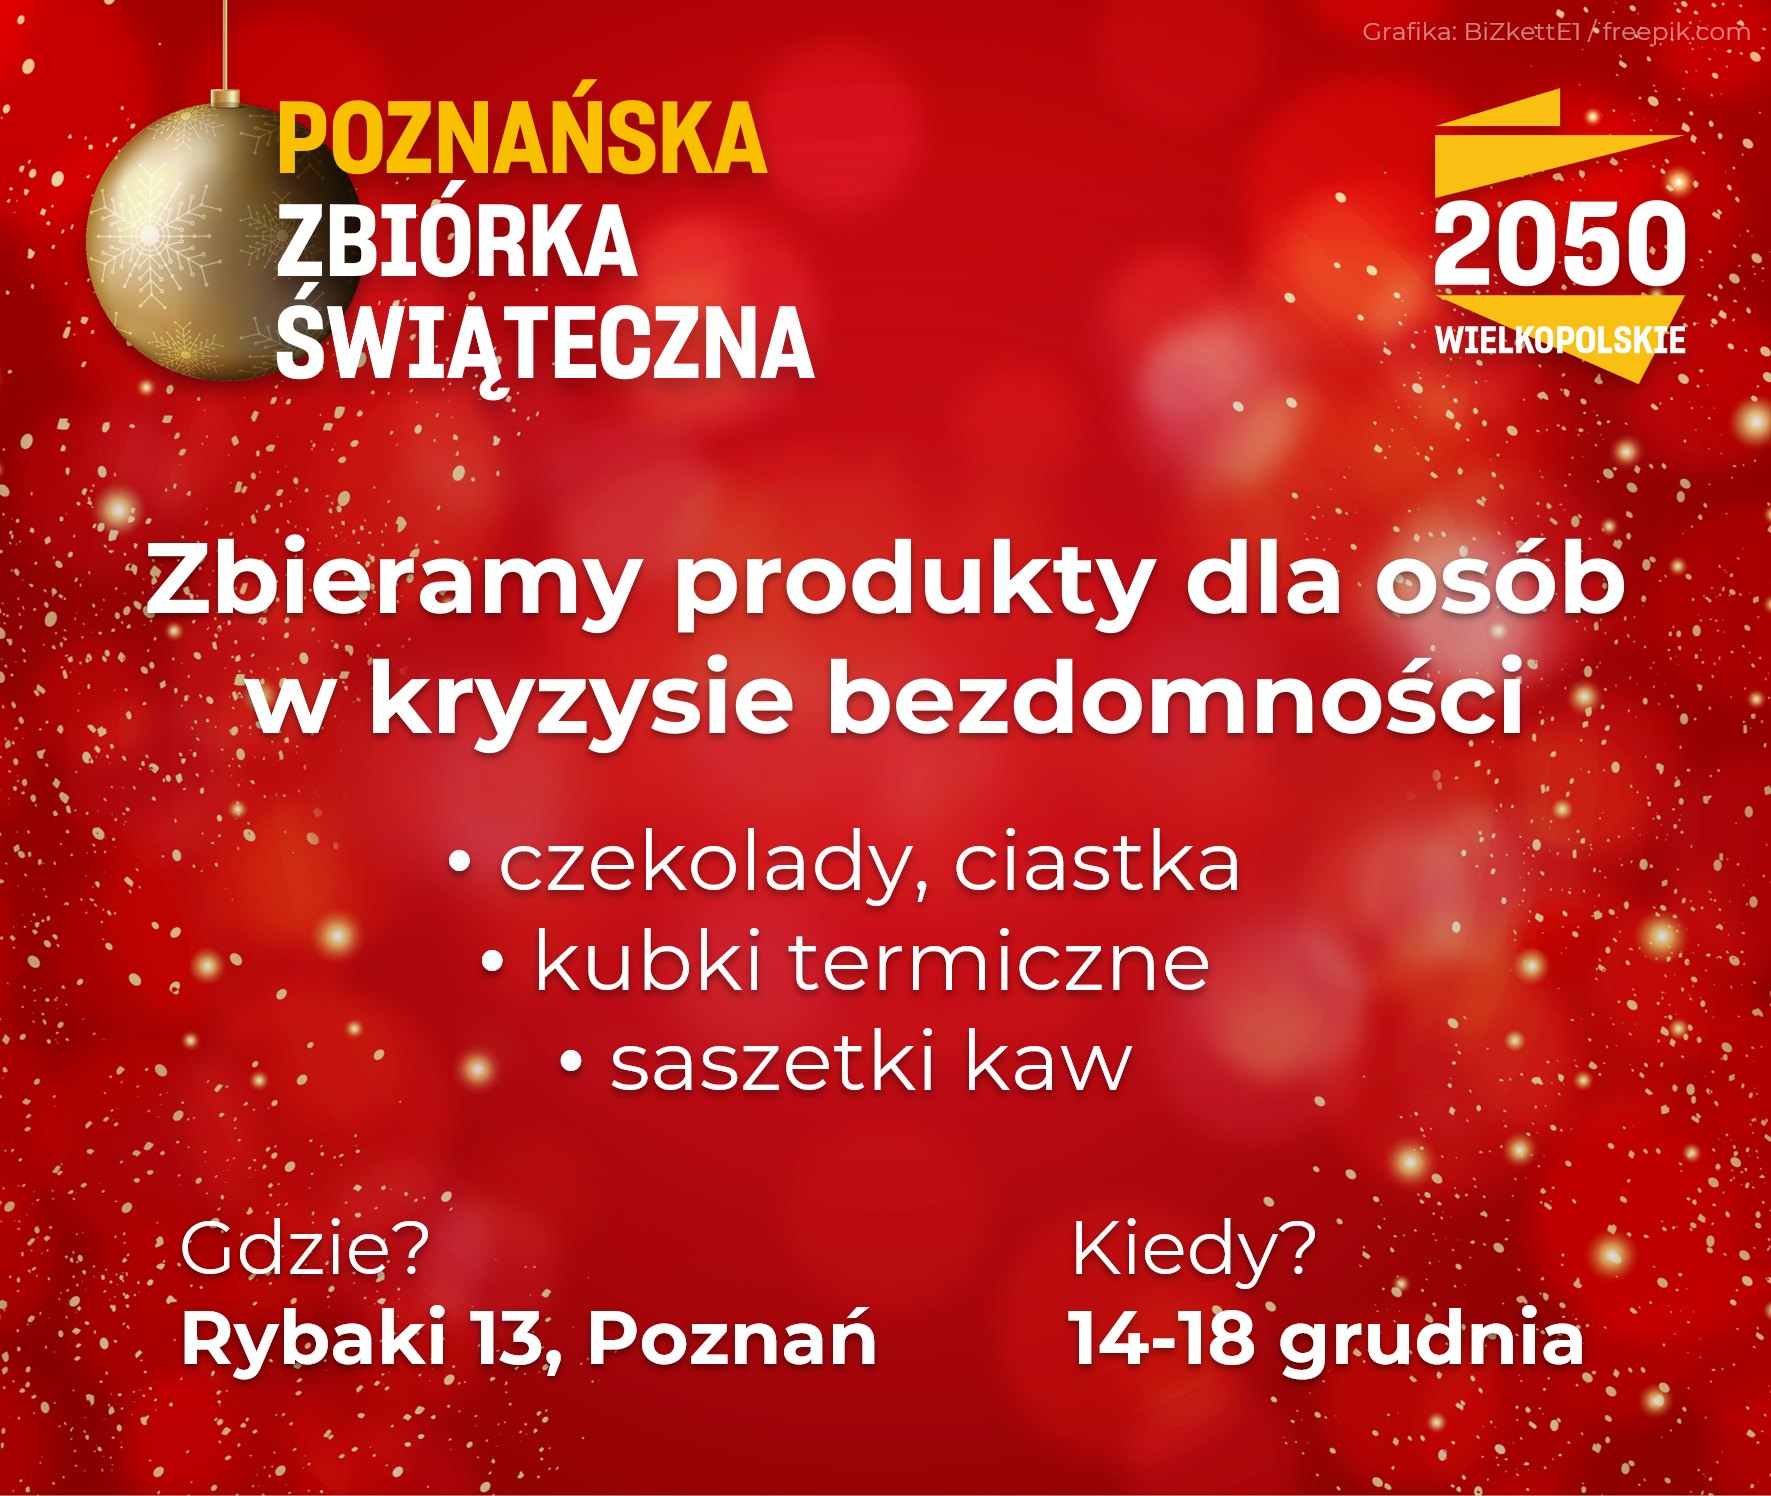 zbiórka bezdomni - Polska 2050 Wielkopolskie